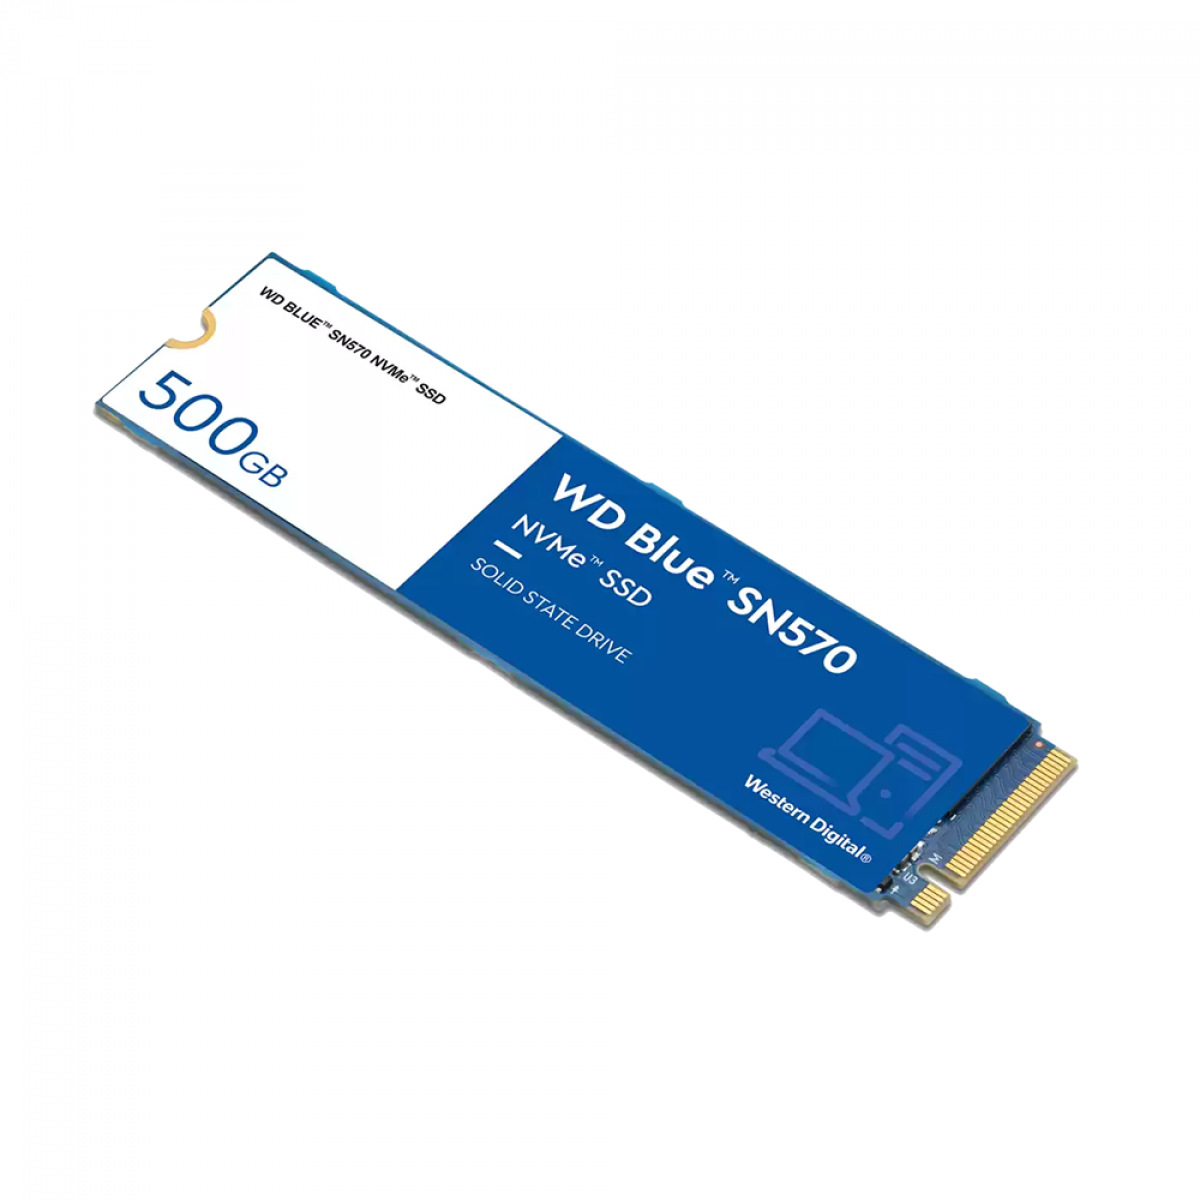 SSD WD Blue SN570 NVMe M.2, 500GB, PCIe Gen3 x4, NVMe v1.4, Leitura 3500MBs e Gravação 2300MBs, WDS500G3B0C